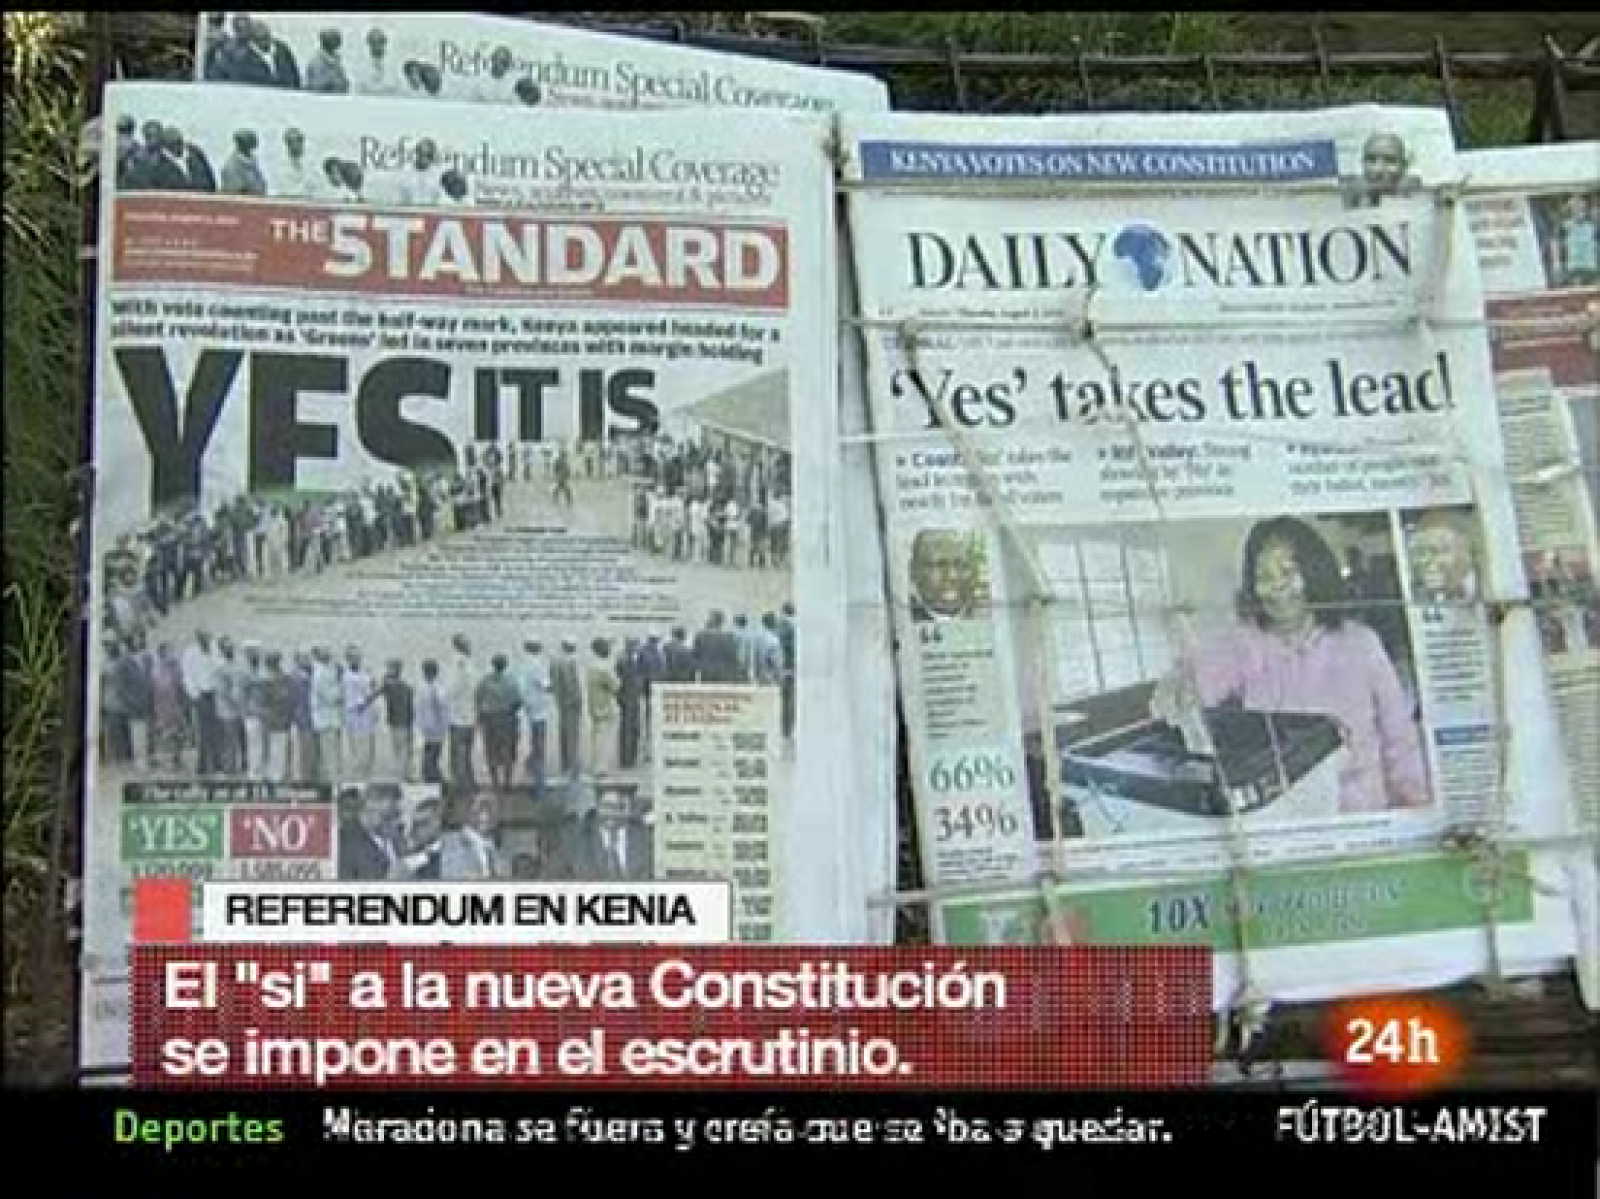 Don el 75% de los votos escrutados, kenia dice 'sí' a la reforma constitucional que supone romper con la anterior que data de 1963, cuando el país se independizó de Reino Unido. Esto abre una nueva etapa para el país. Por su parte, los partidarios del 'no' siembran sus dudas sobre el recuento de los votos aunque las autoridades afirman que el referéndum mucho más transparente que en pasados comicios. (05/08/10)